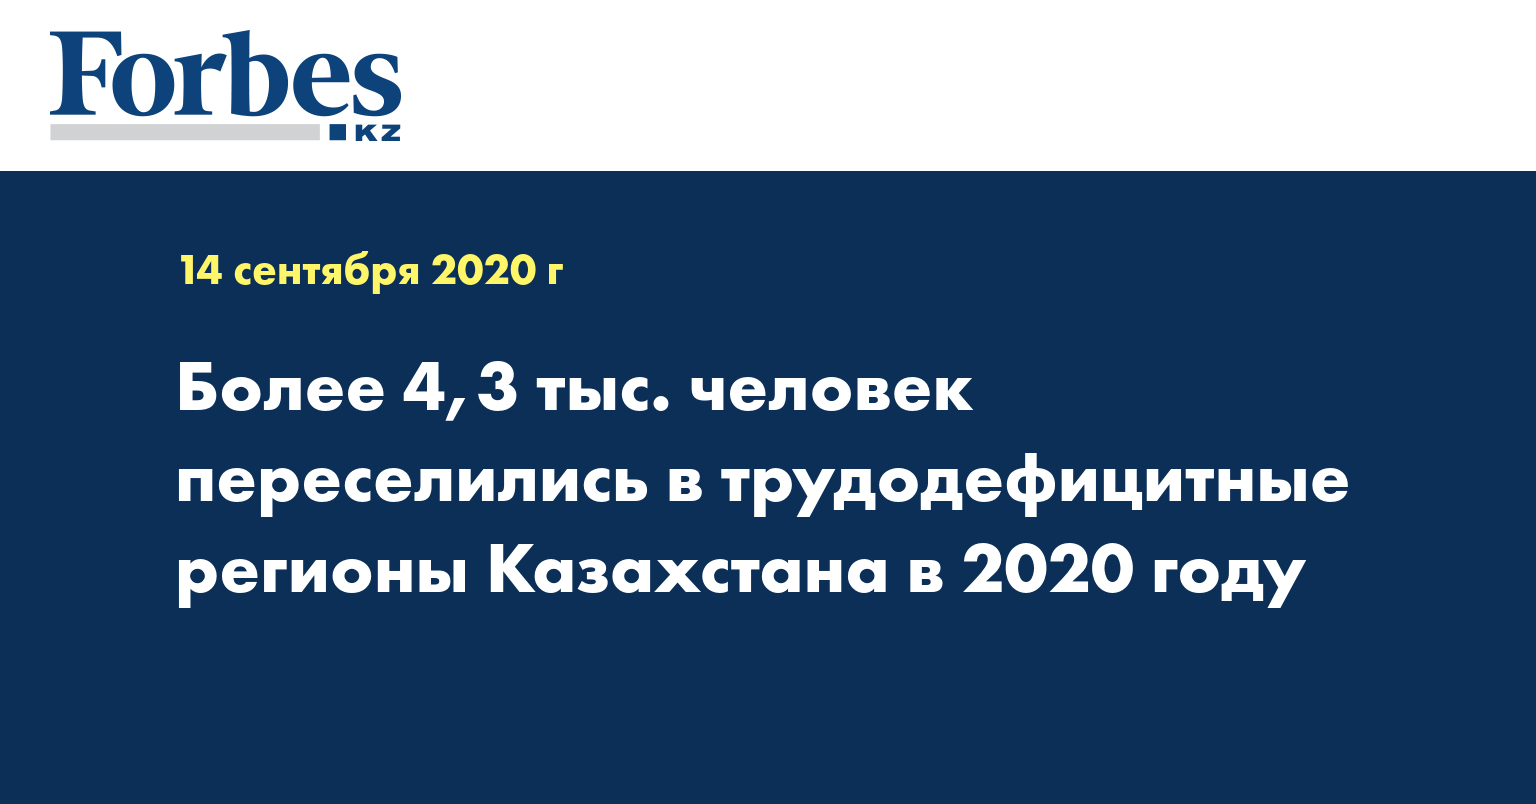 Более 4,3 тыс. человек переселились в трудодефицитные регионы Казахстана в 2020 году